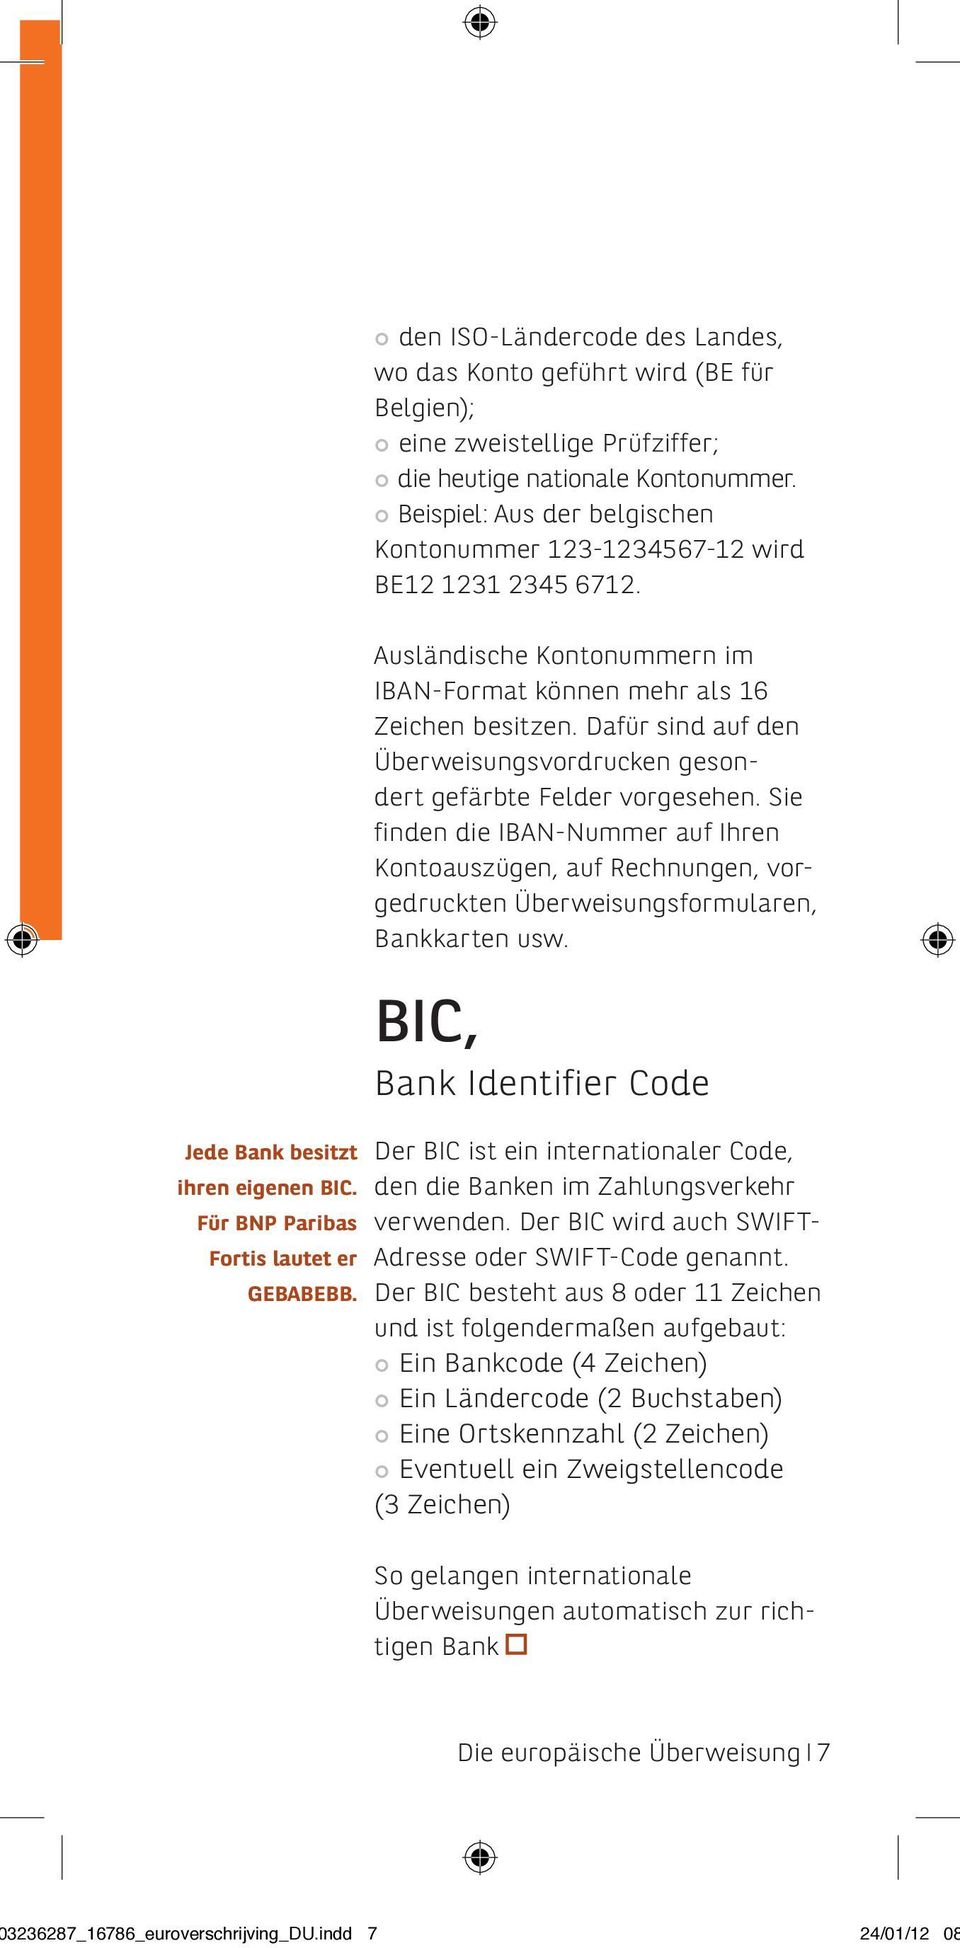 Beispiel: Aus der belgischen Kontonummer 123-1234567-12 wird BE12 1231 2345 6712. Ausländische Kontonummern im IBAN-Format können mehr als 16 Zeichen besitzen.